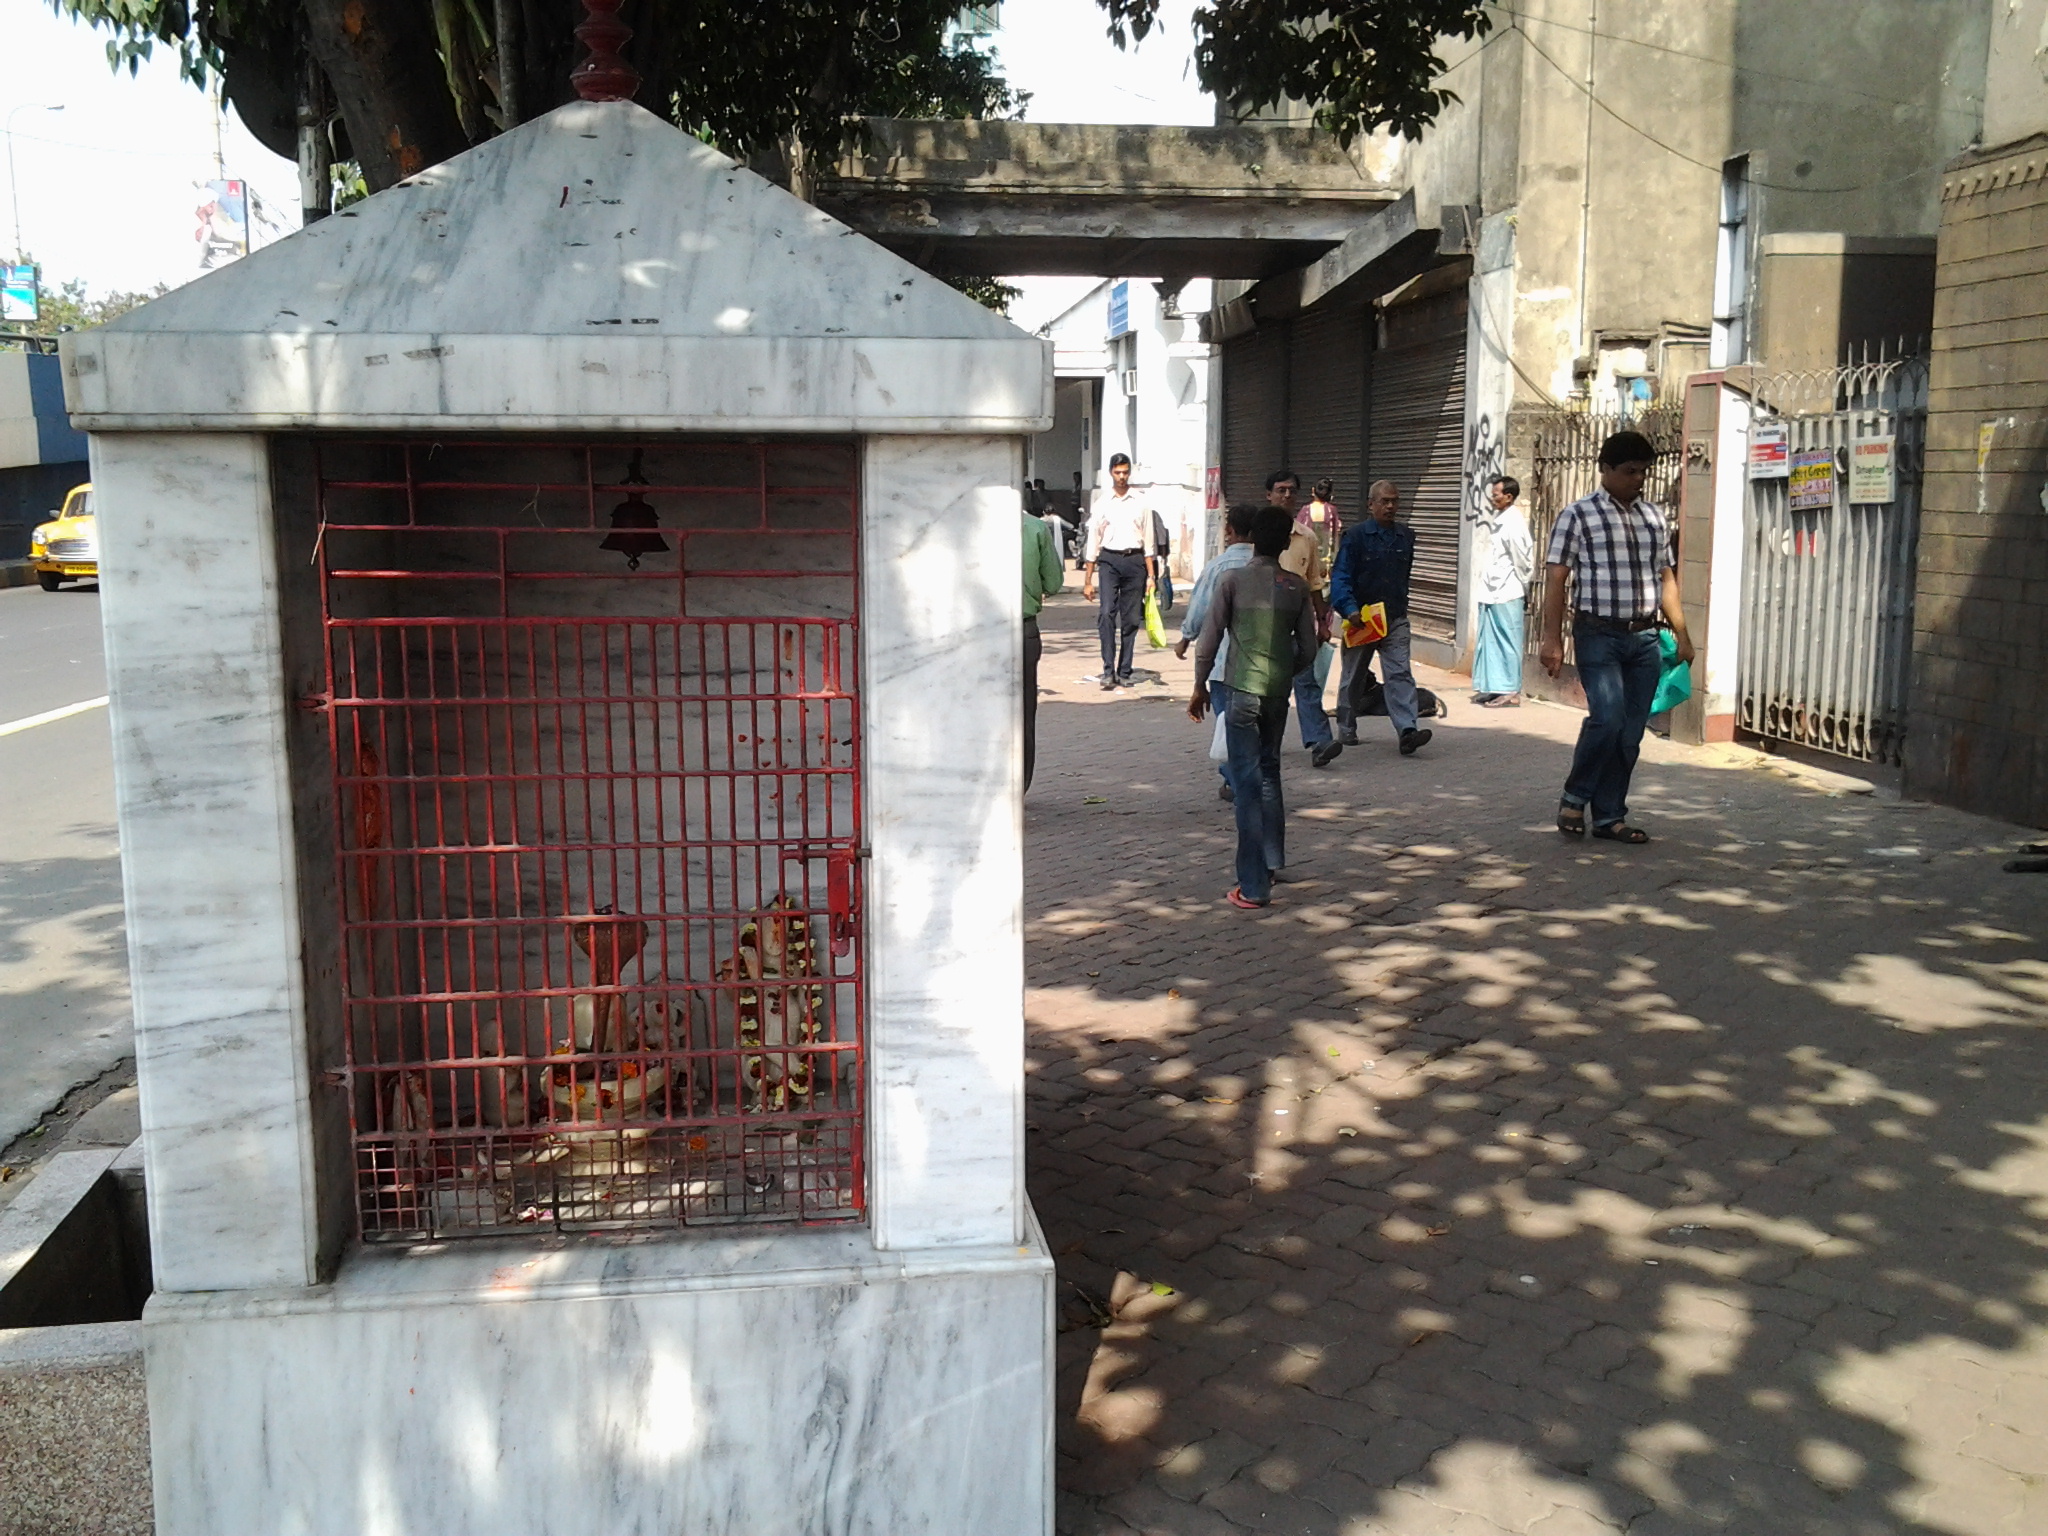 A scene in Kolkata, Bengal, India